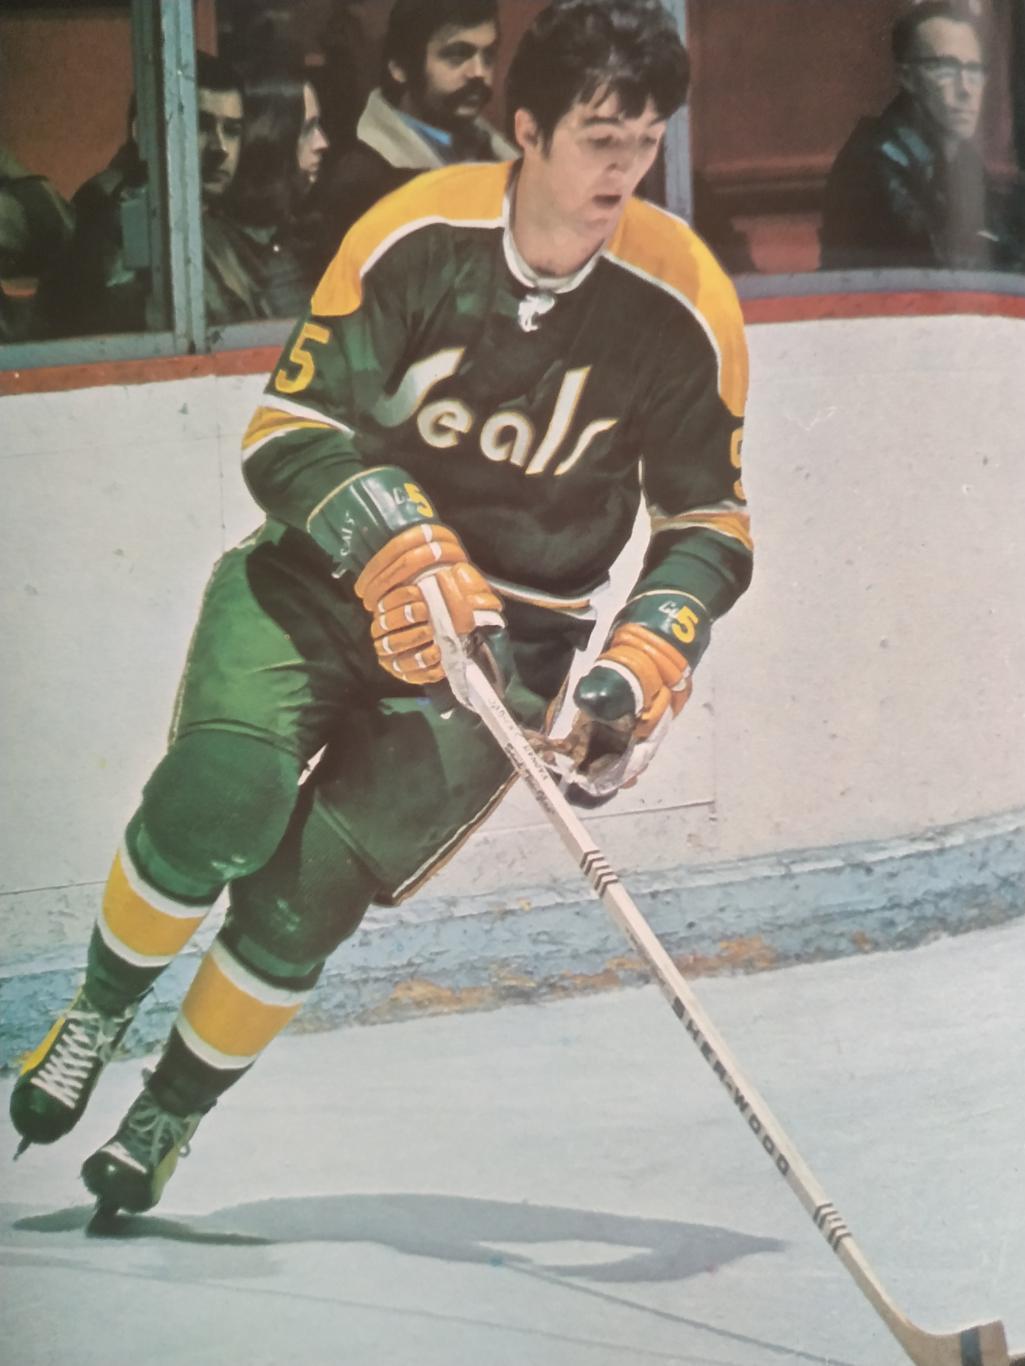 ХОККЕЙ ПРОГРАММА АЛЬБОМ КАЛИФОРНИЯ НХЛ NHL 1971 NOV.16 CALIFORNIA PROGRAM 5